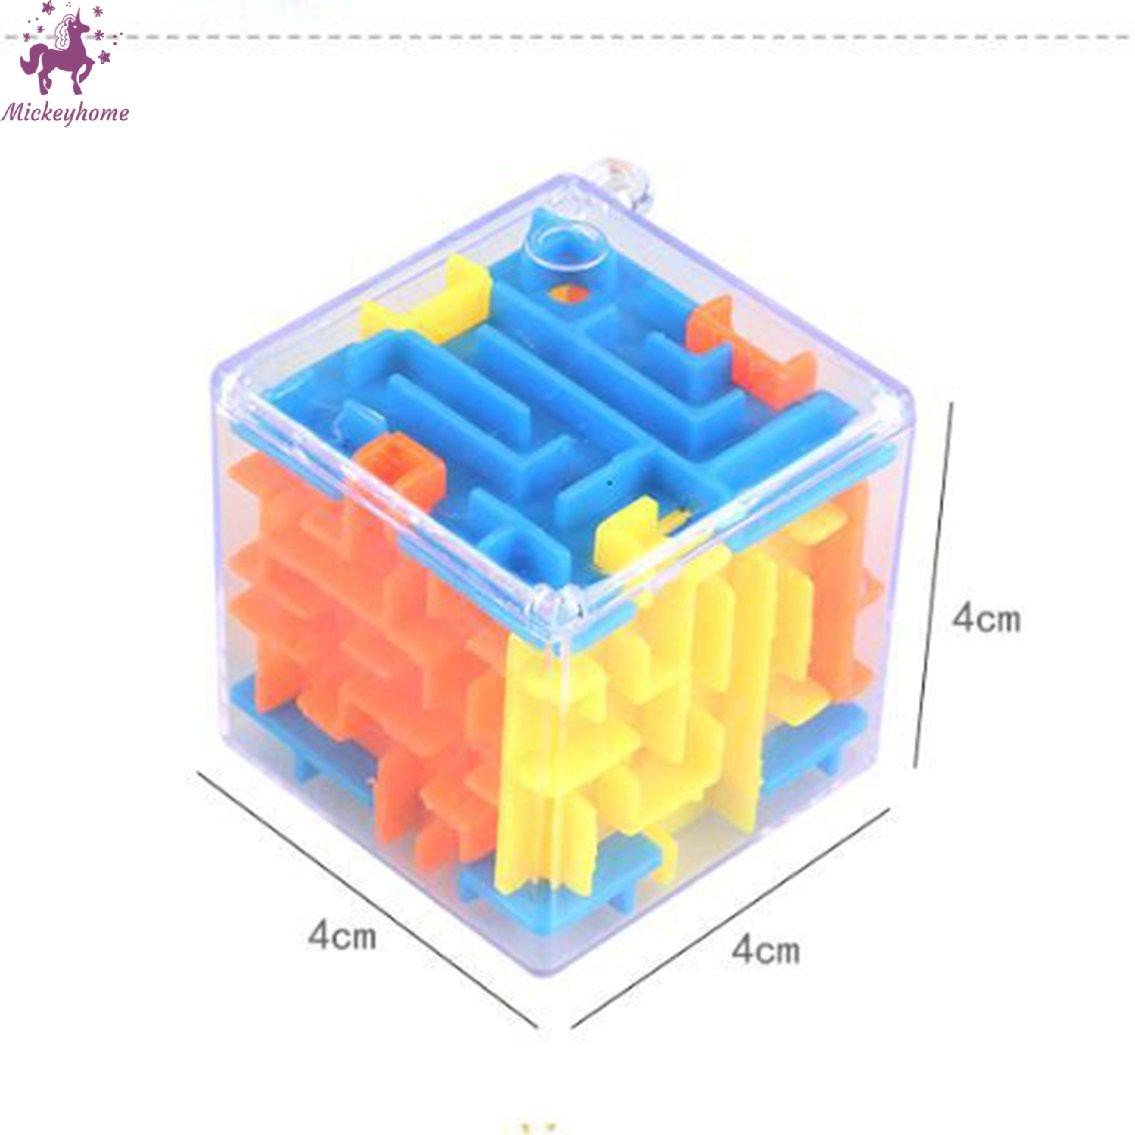 Đồ chơi mê cung hình hộp 3D phát triển trí tuệ dành cho trẻ em